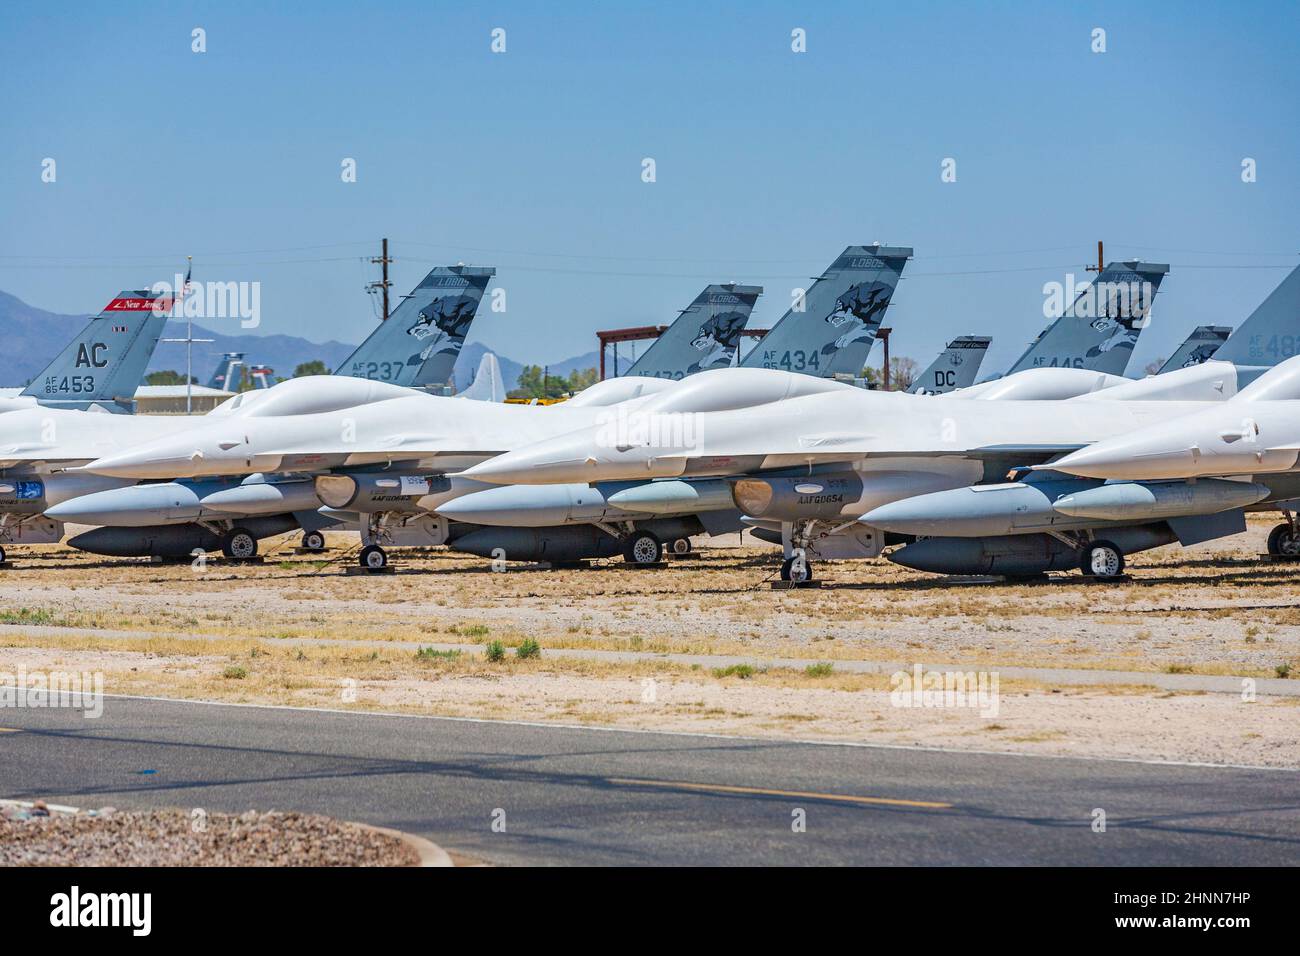 Davis-Monthan Air Force Base AMARG boneyard in Tucson, Arizona Stock Photo